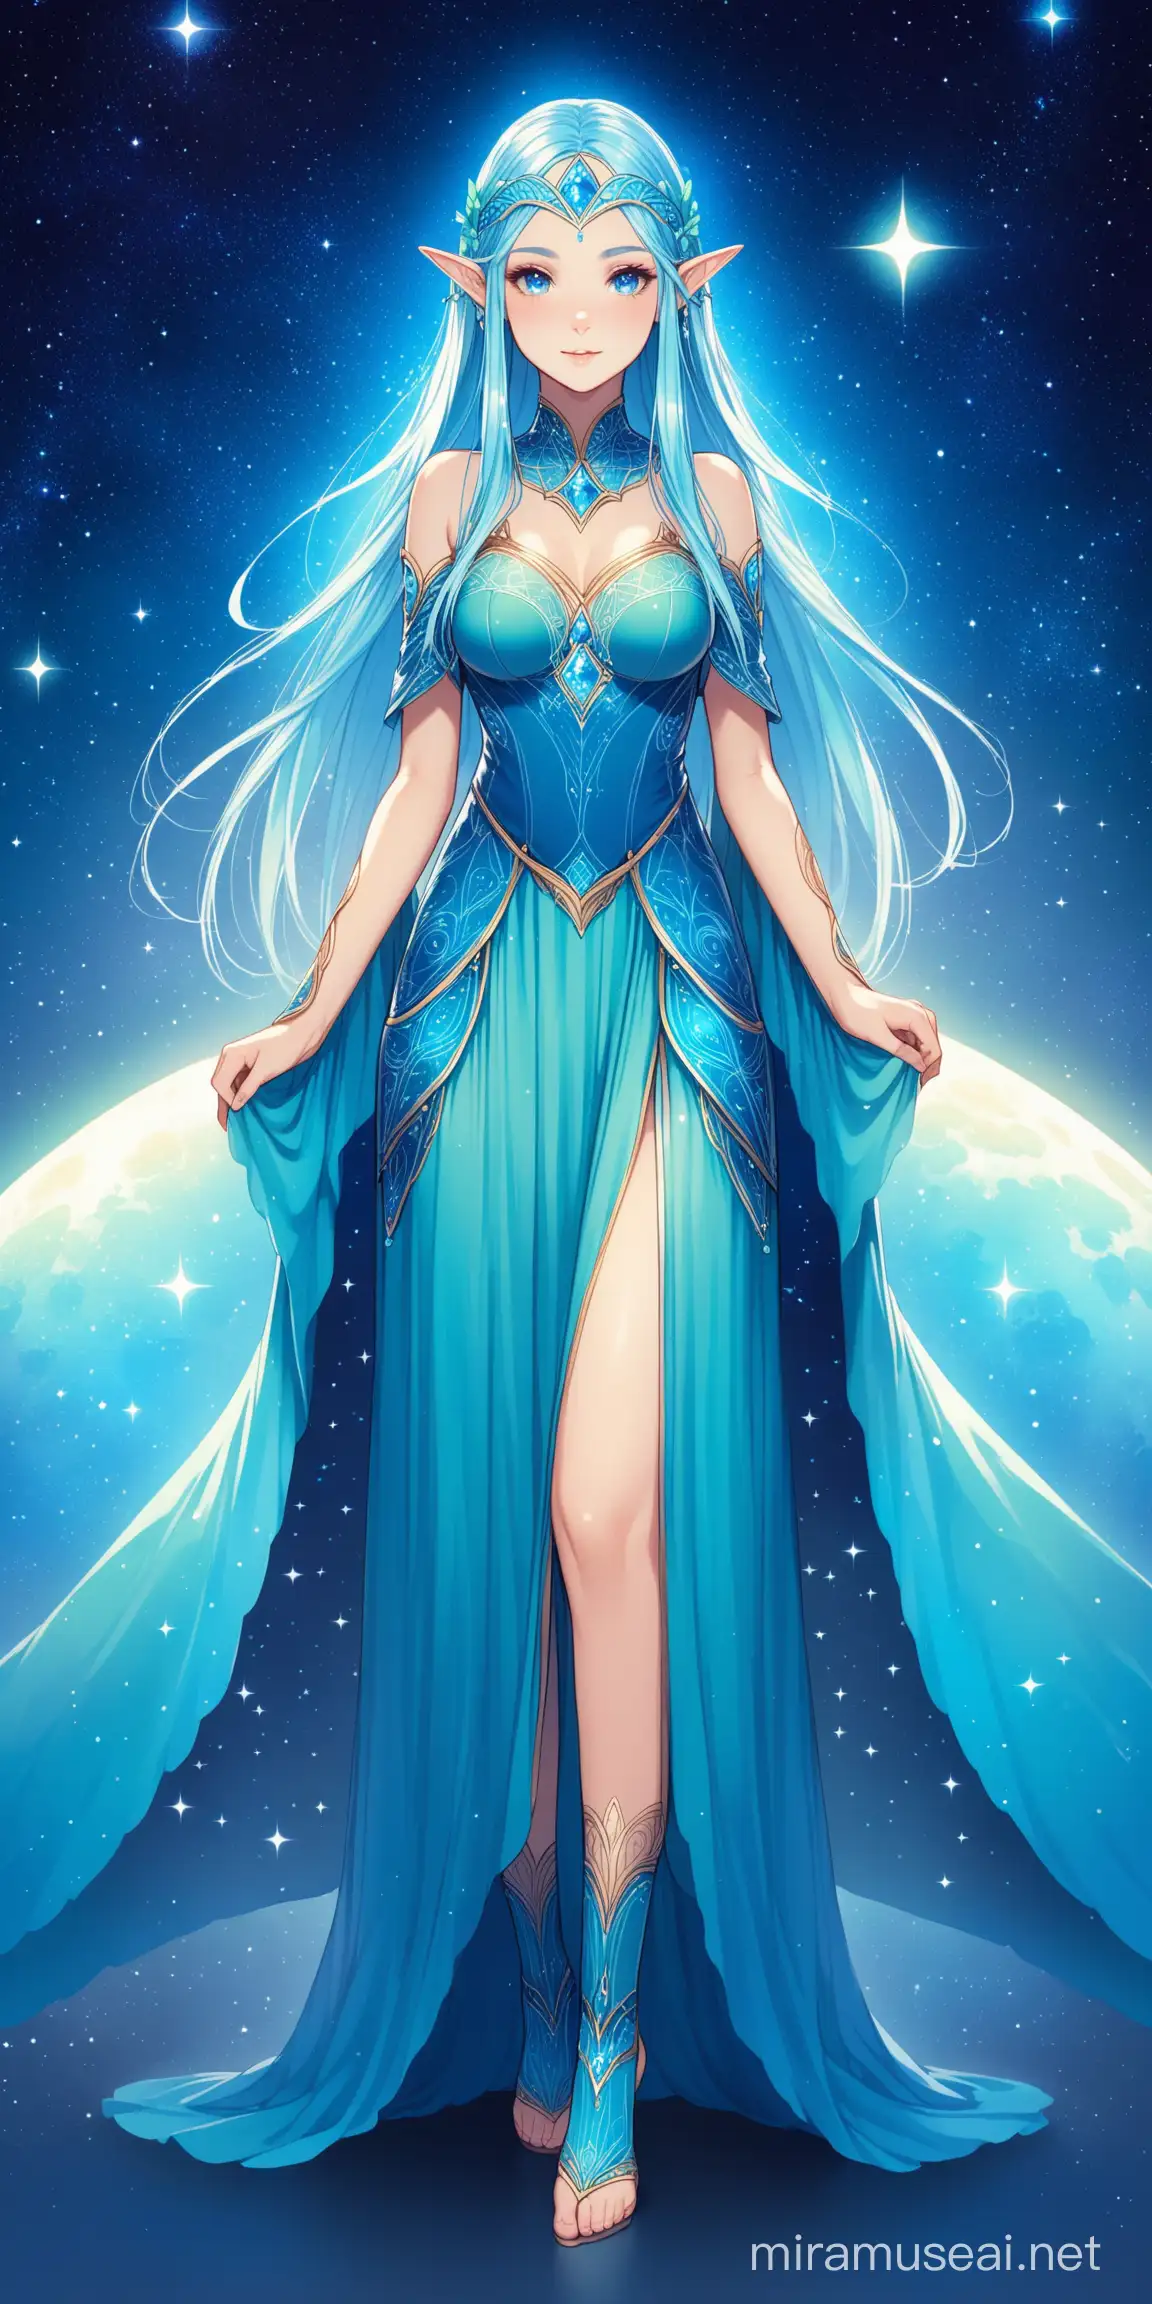 Elven Girl in Celestial Blue Dress